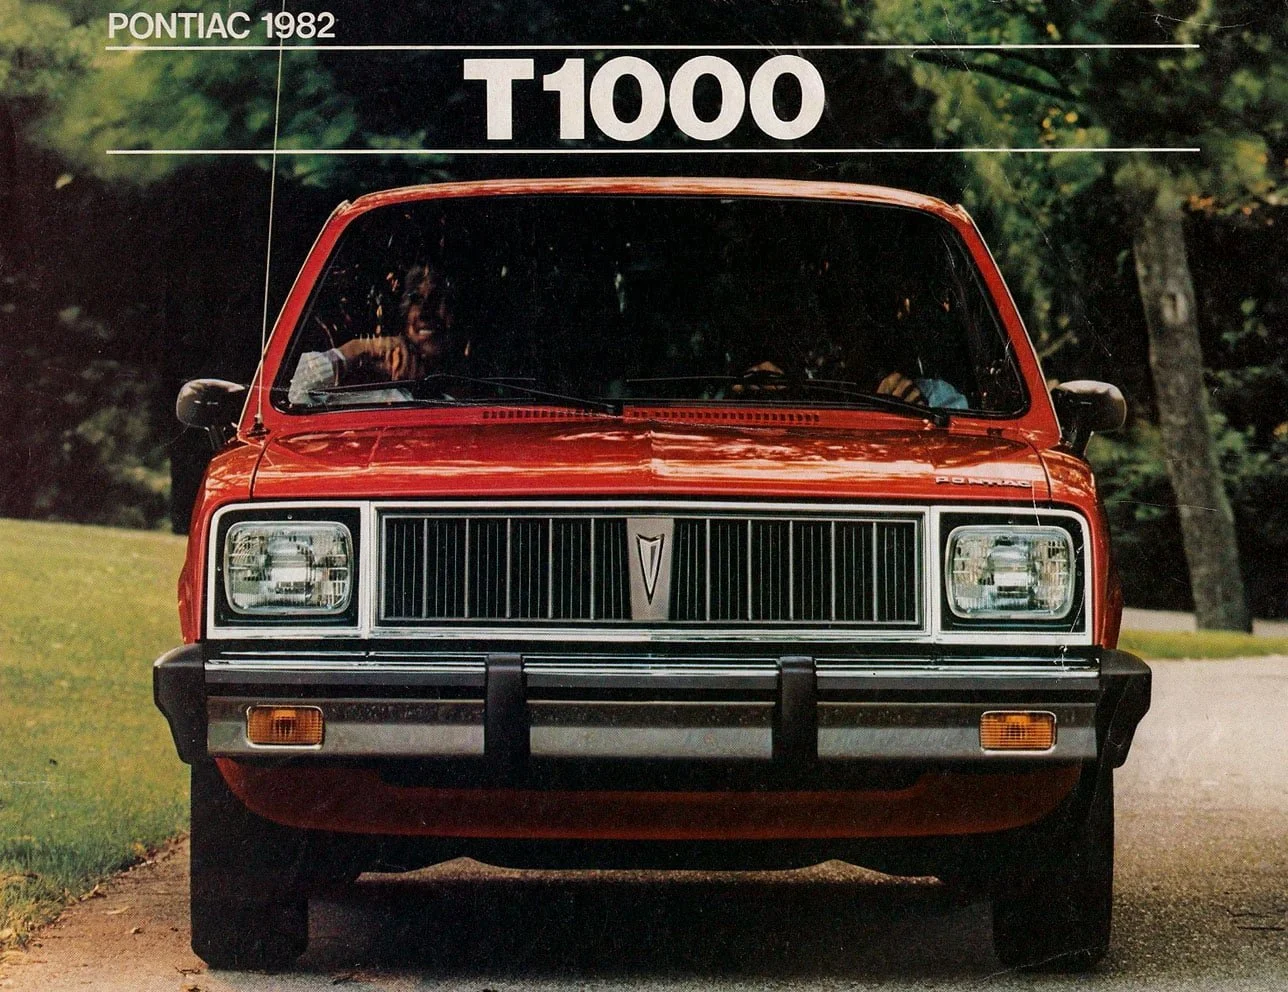 T10001982